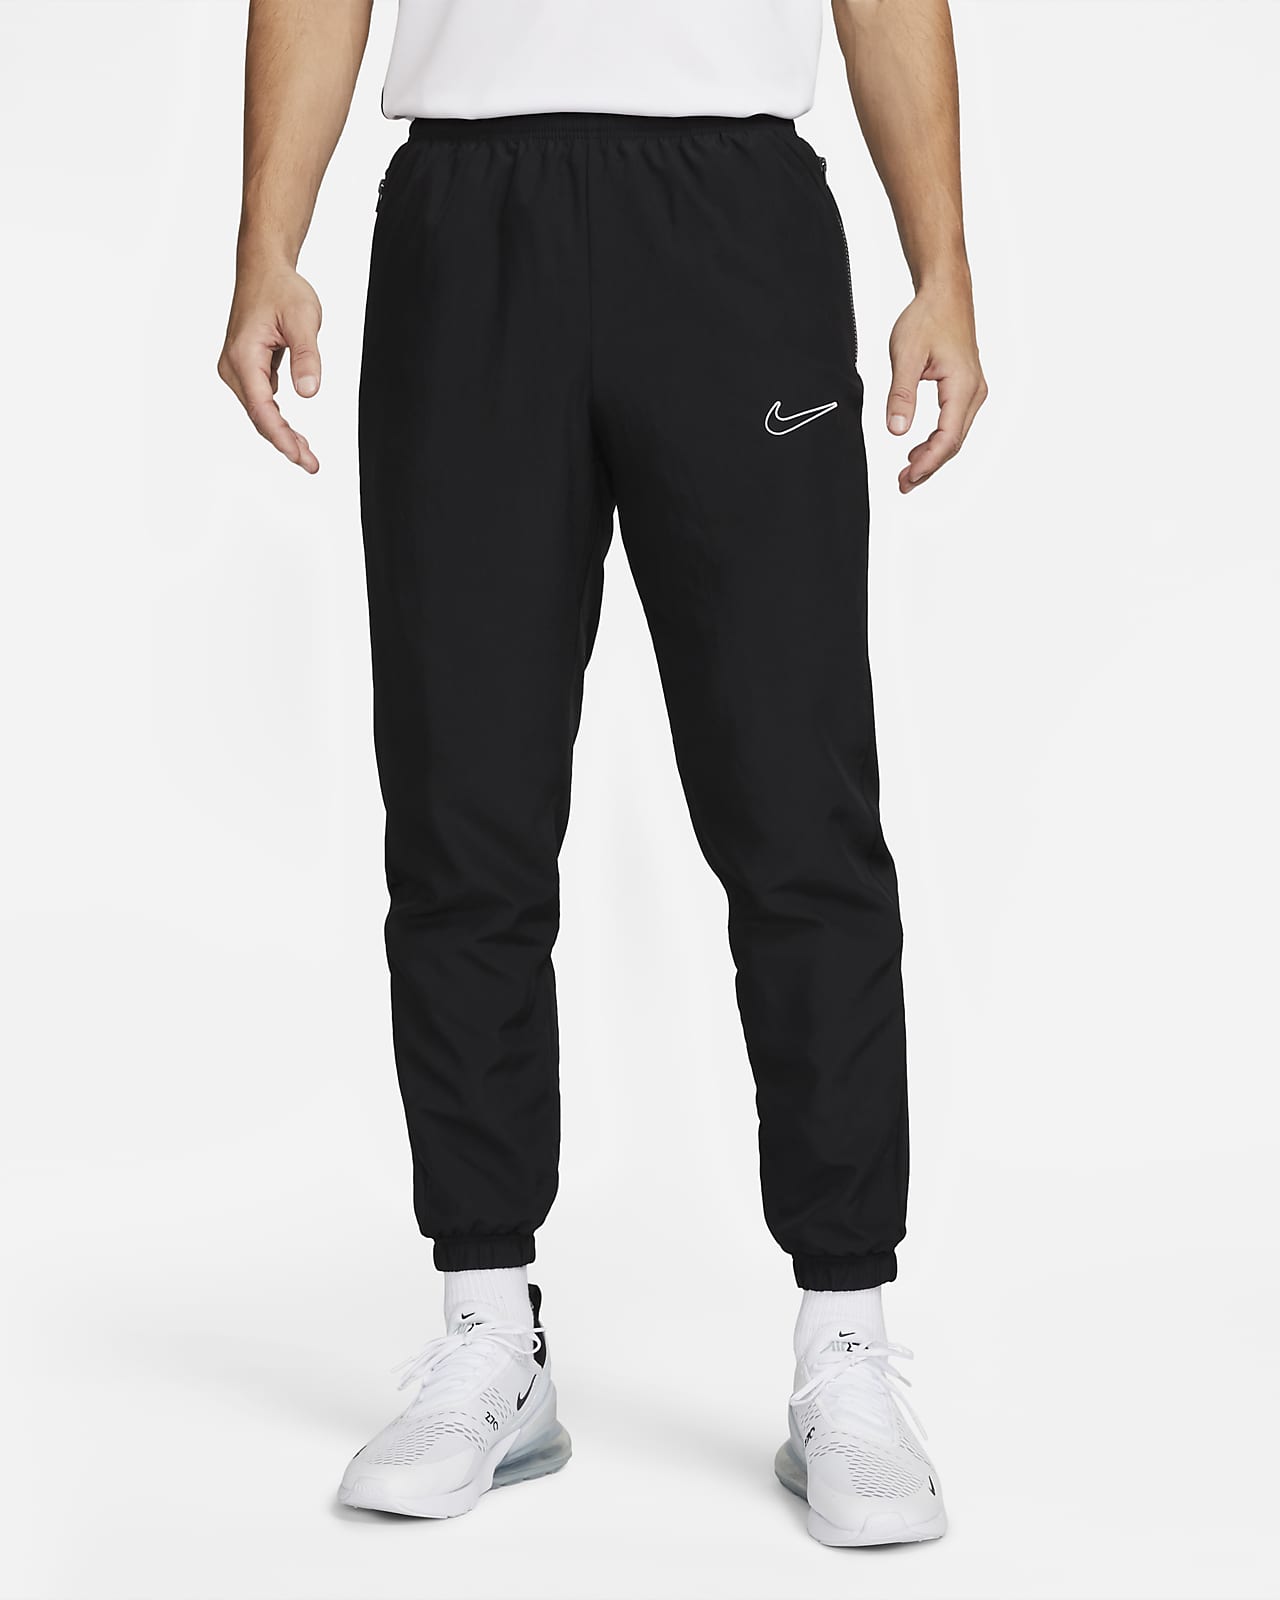 Betsy Trotwood estimular Alfabeto Nike Dri-FIT Academy Pantalón deportivo de tejido Woven de fútbol - Hombre.  Nike ES